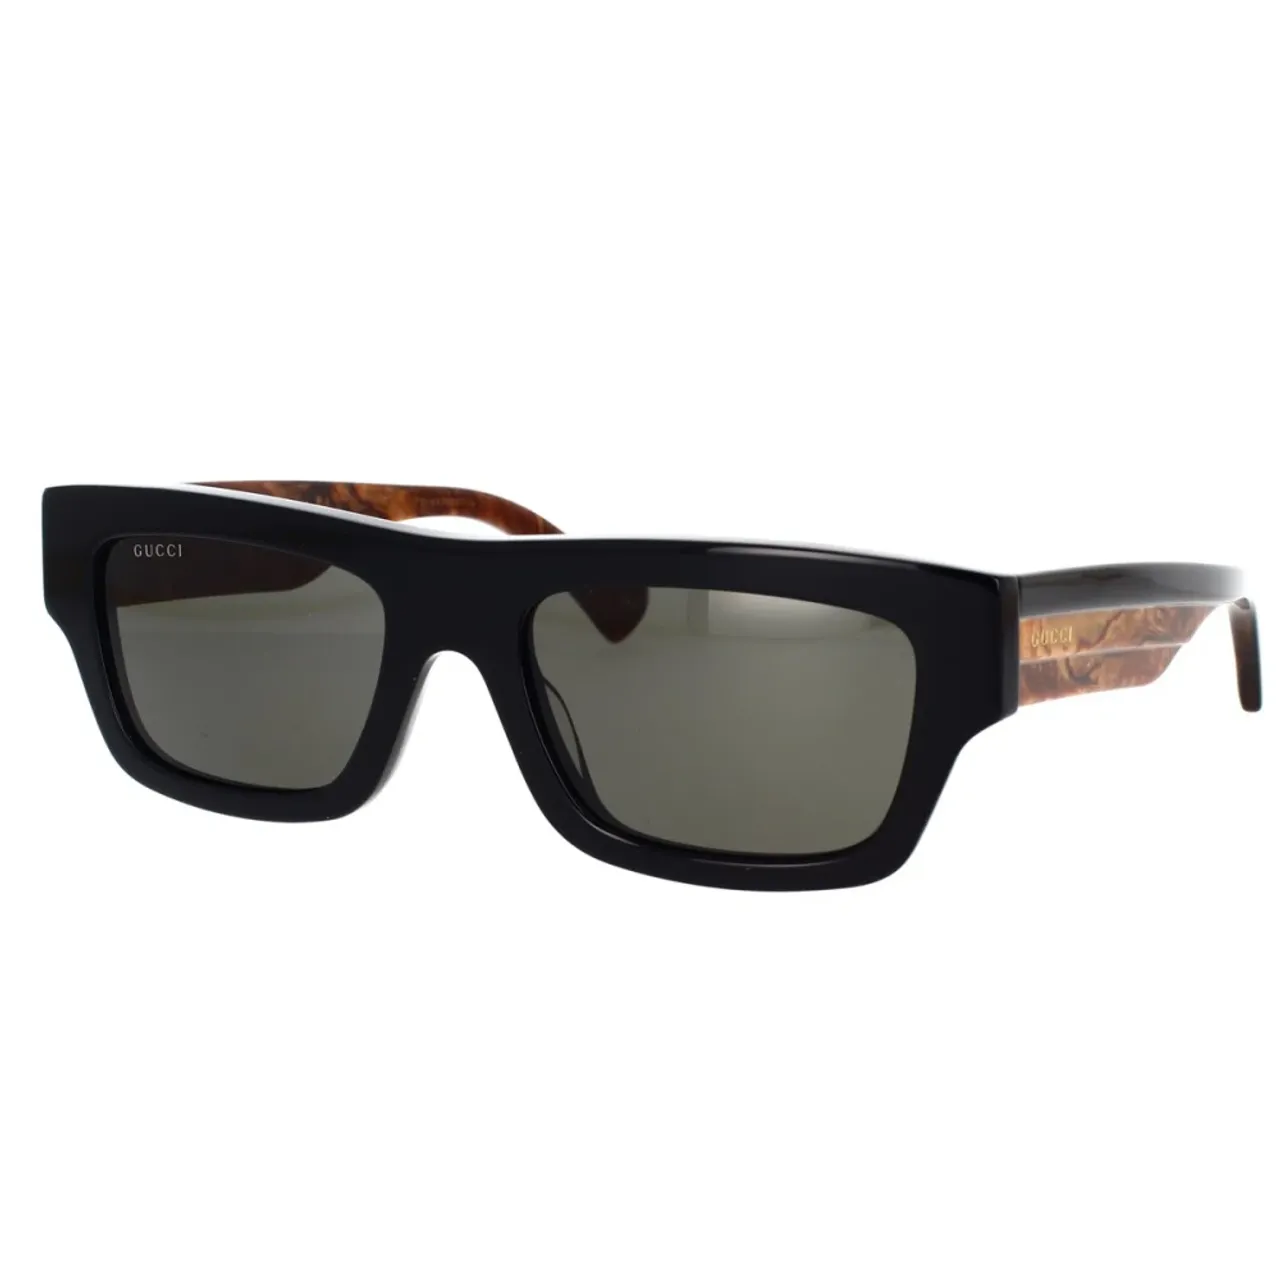 Rechteckige Sonnenbrille mit gewagtem Acetatrand und eleganten GG-Logo-Bügeln Gucci